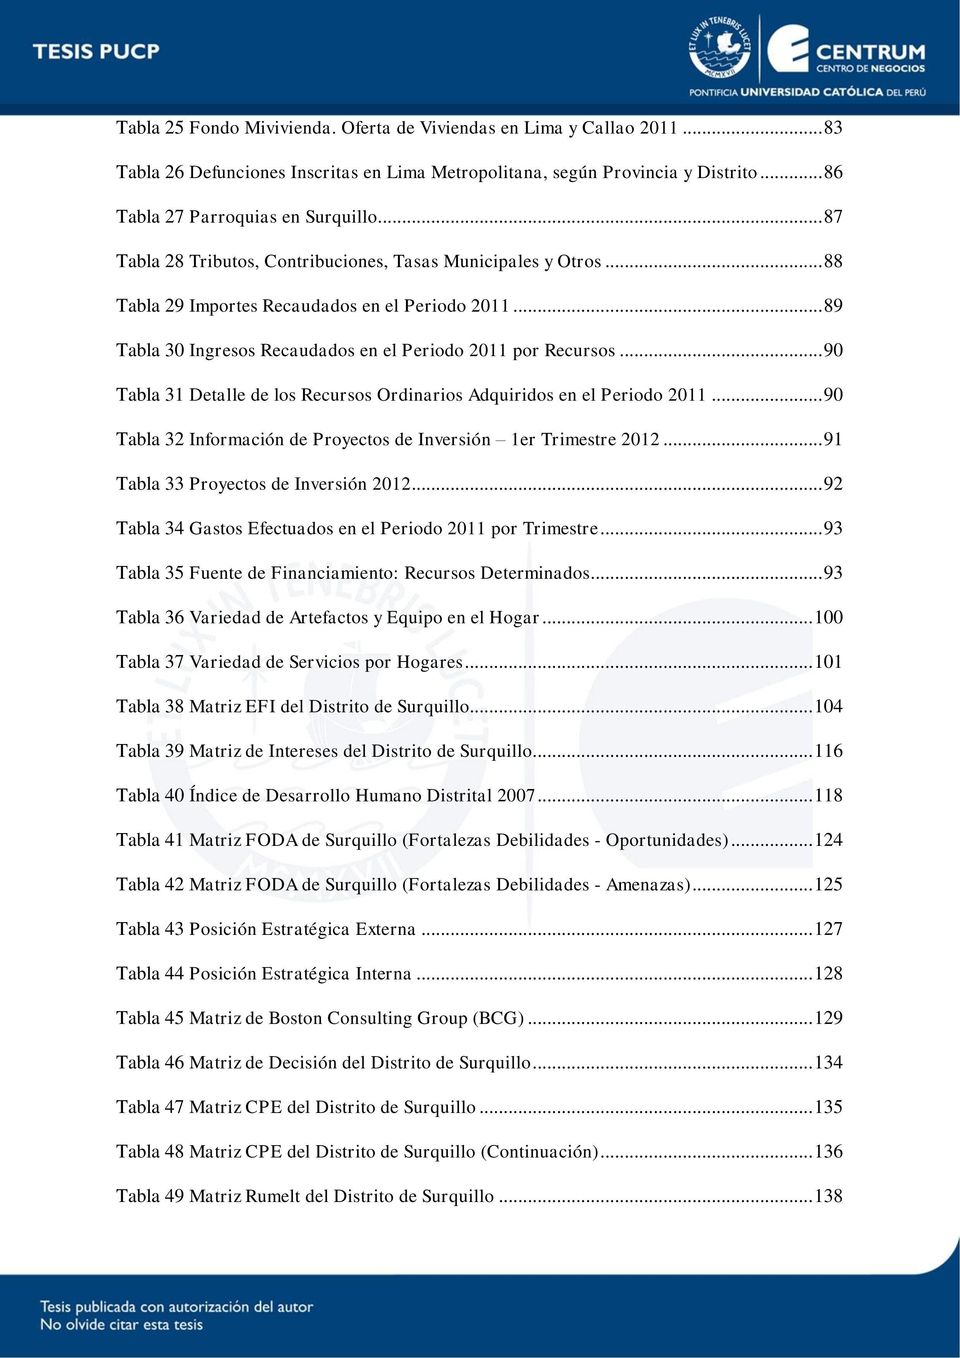 .. 90 Tabla 31 Detalle de los Recursos Ordinarios Adquiridos en el Periodo 2011... 90 Tabla 32 Información de Proyectos de Inversión 1er Trimestre 2012... 91 Tabla 33 Proyectos de Inversión 2012.